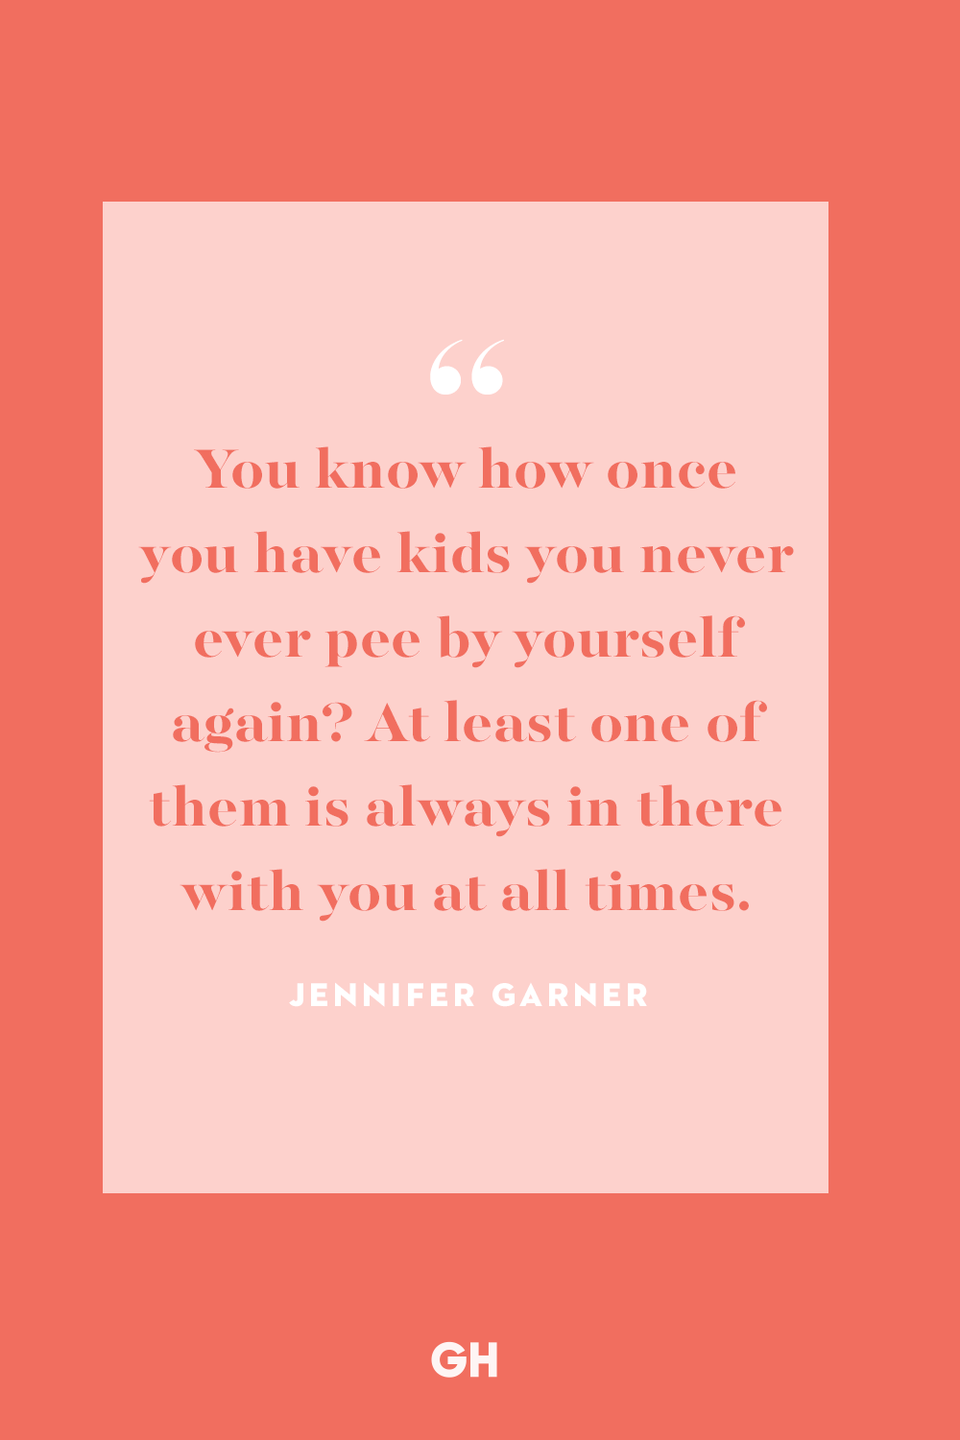 Jennifer Garner